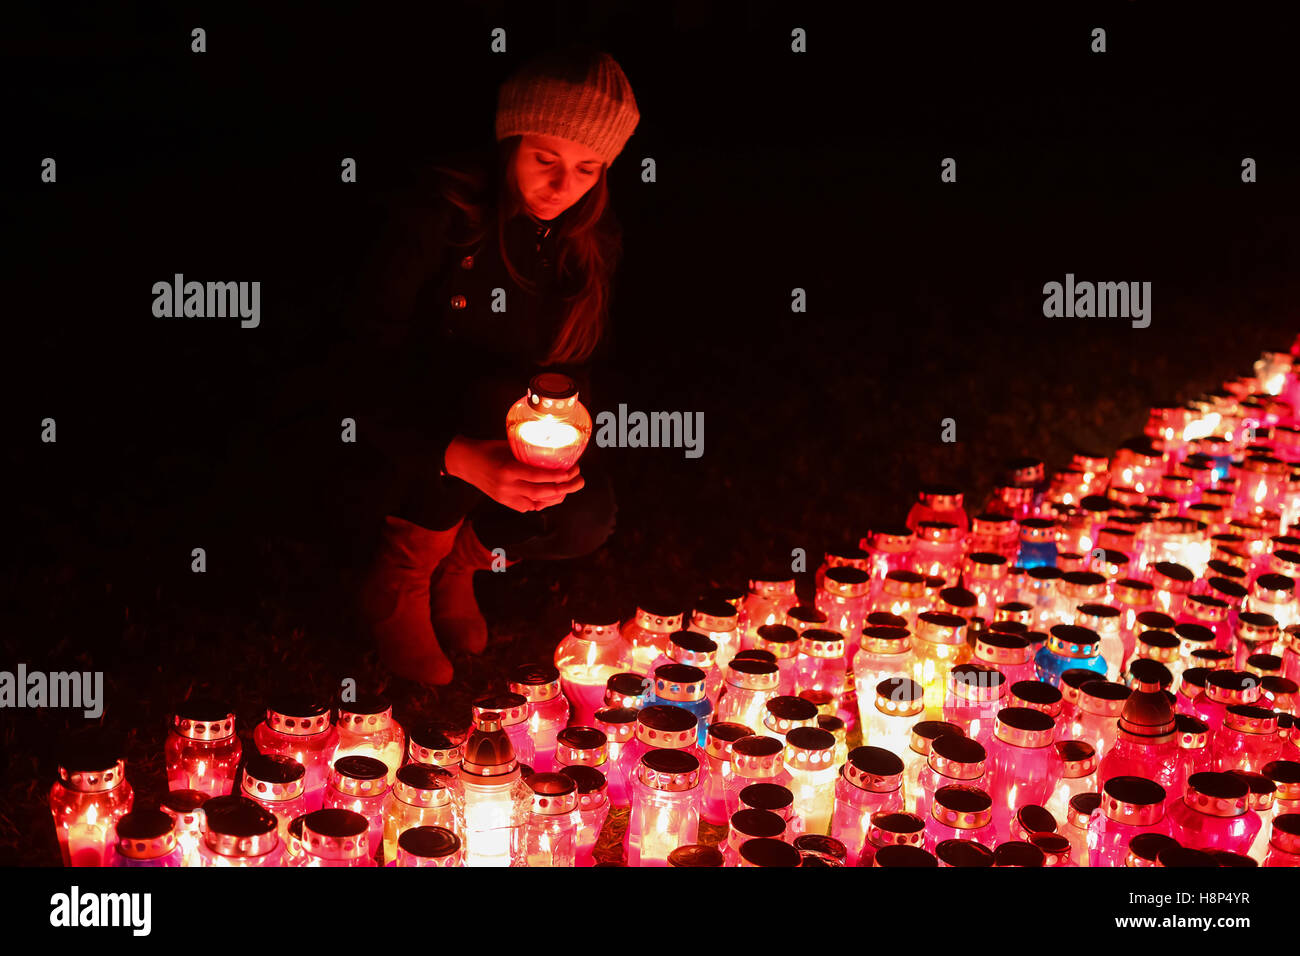 Una vista notturna di una donna tenendo un lampion davanti a un folto gruppo di bruciare lampions sul pavimento al cimitero in Croazia. Foto Stock